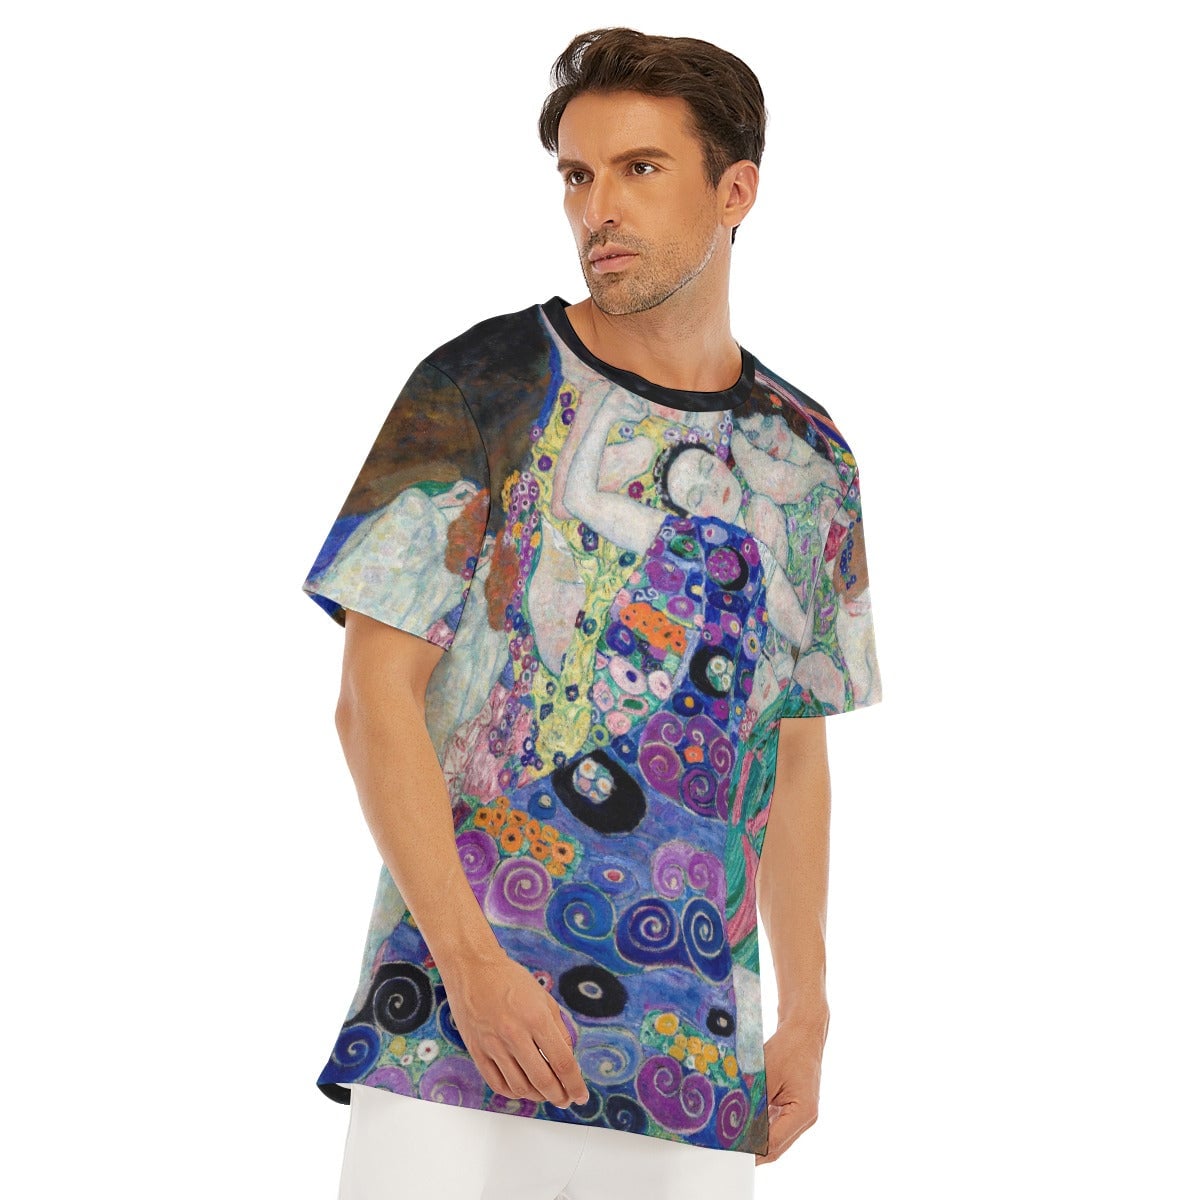 Gustav Klimt’s The Virgin T-Shirt